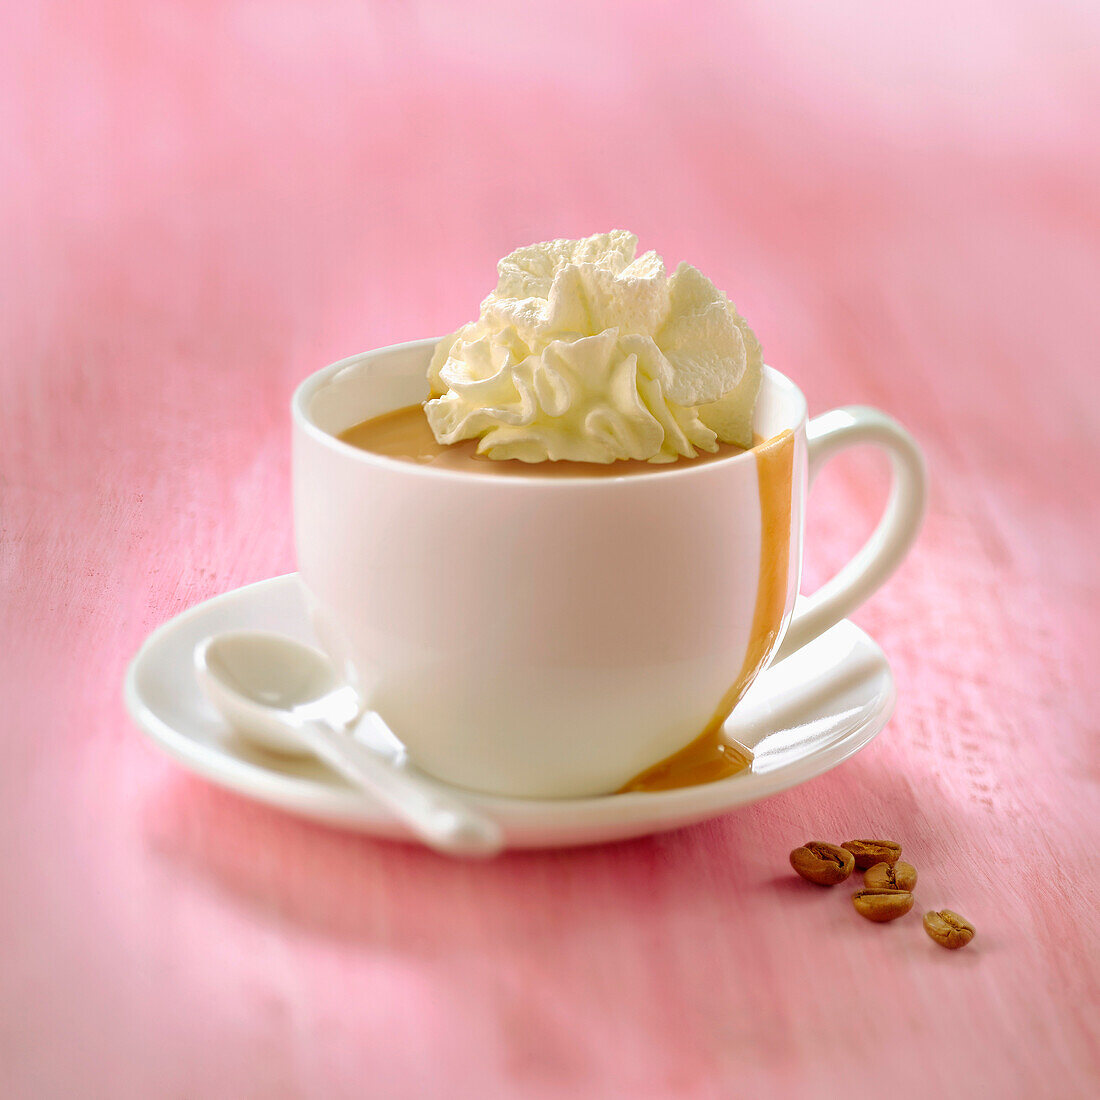 Kaffee-Eis mit Mascarpone-Sahne und Karamellsauce